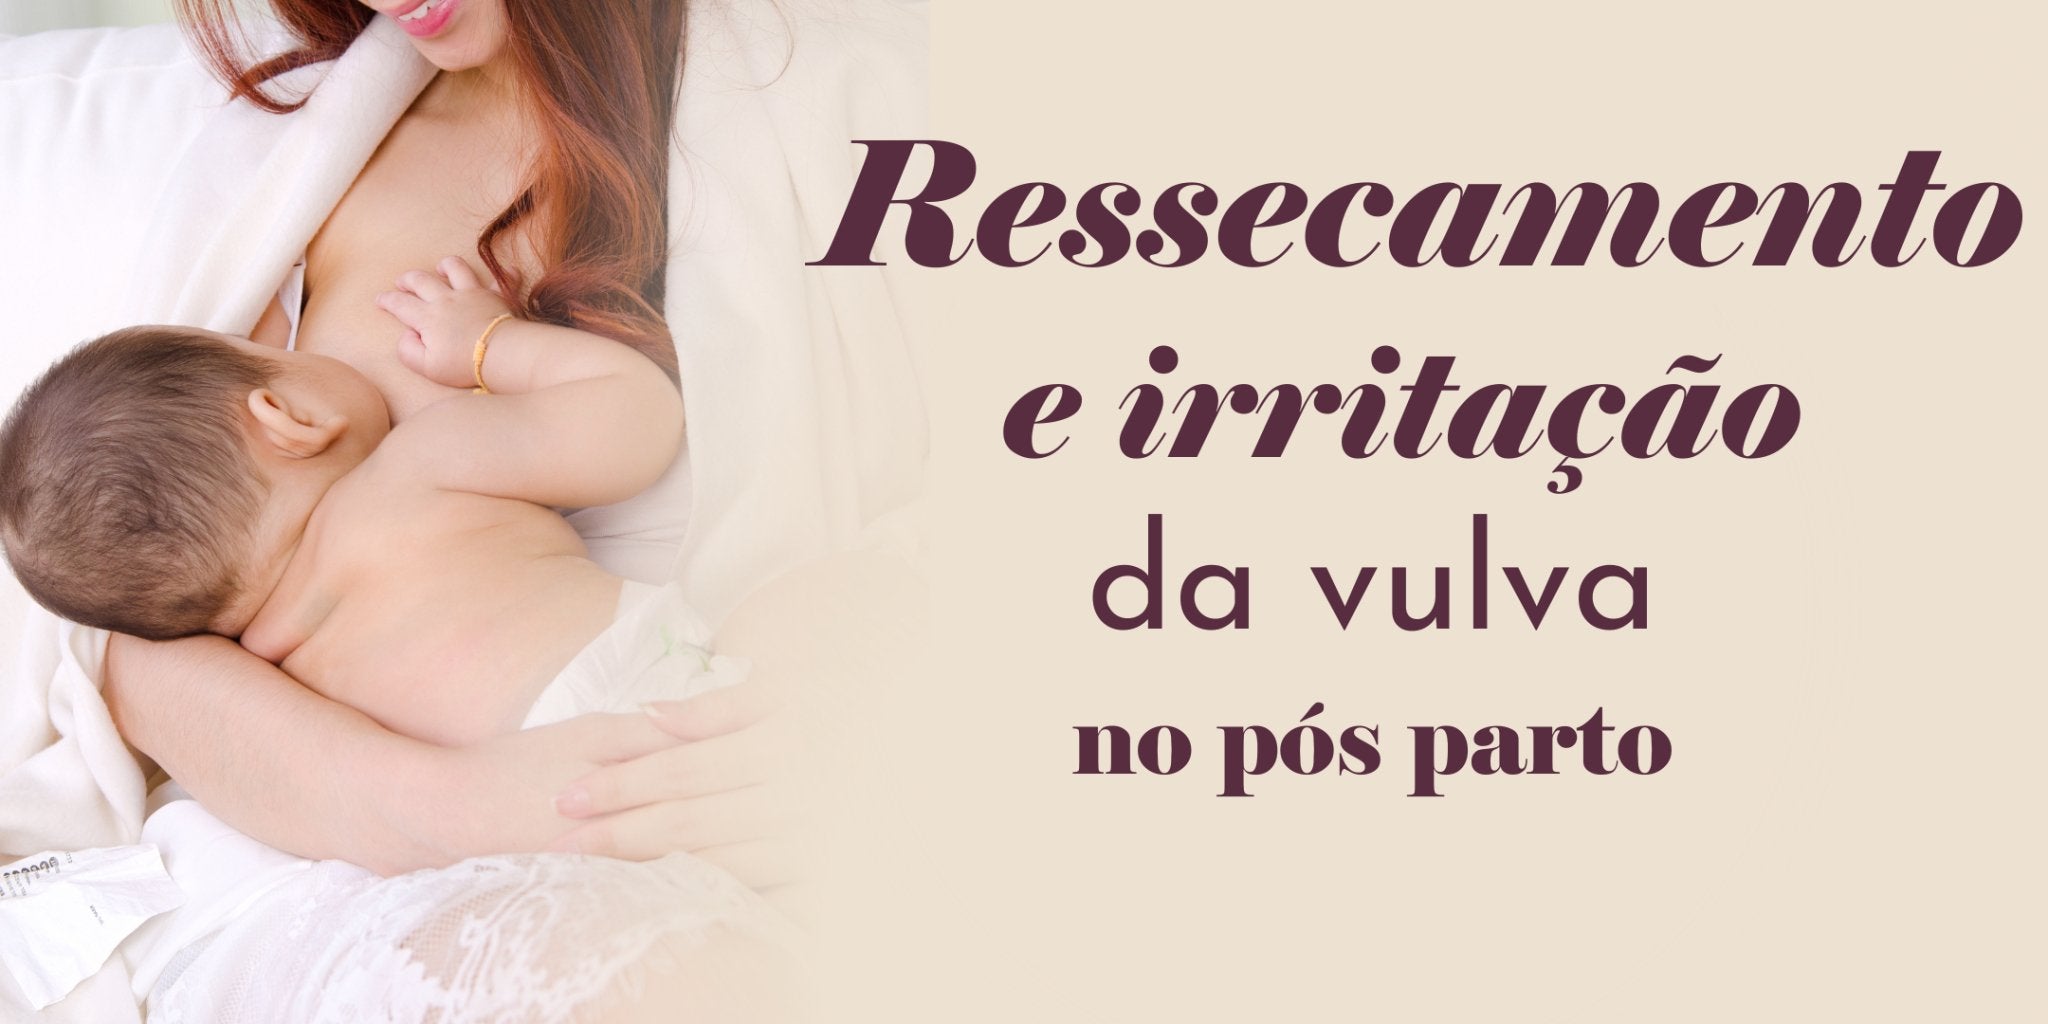 Ressecamento e irritação da vulva no pós-parto – Dita cuja